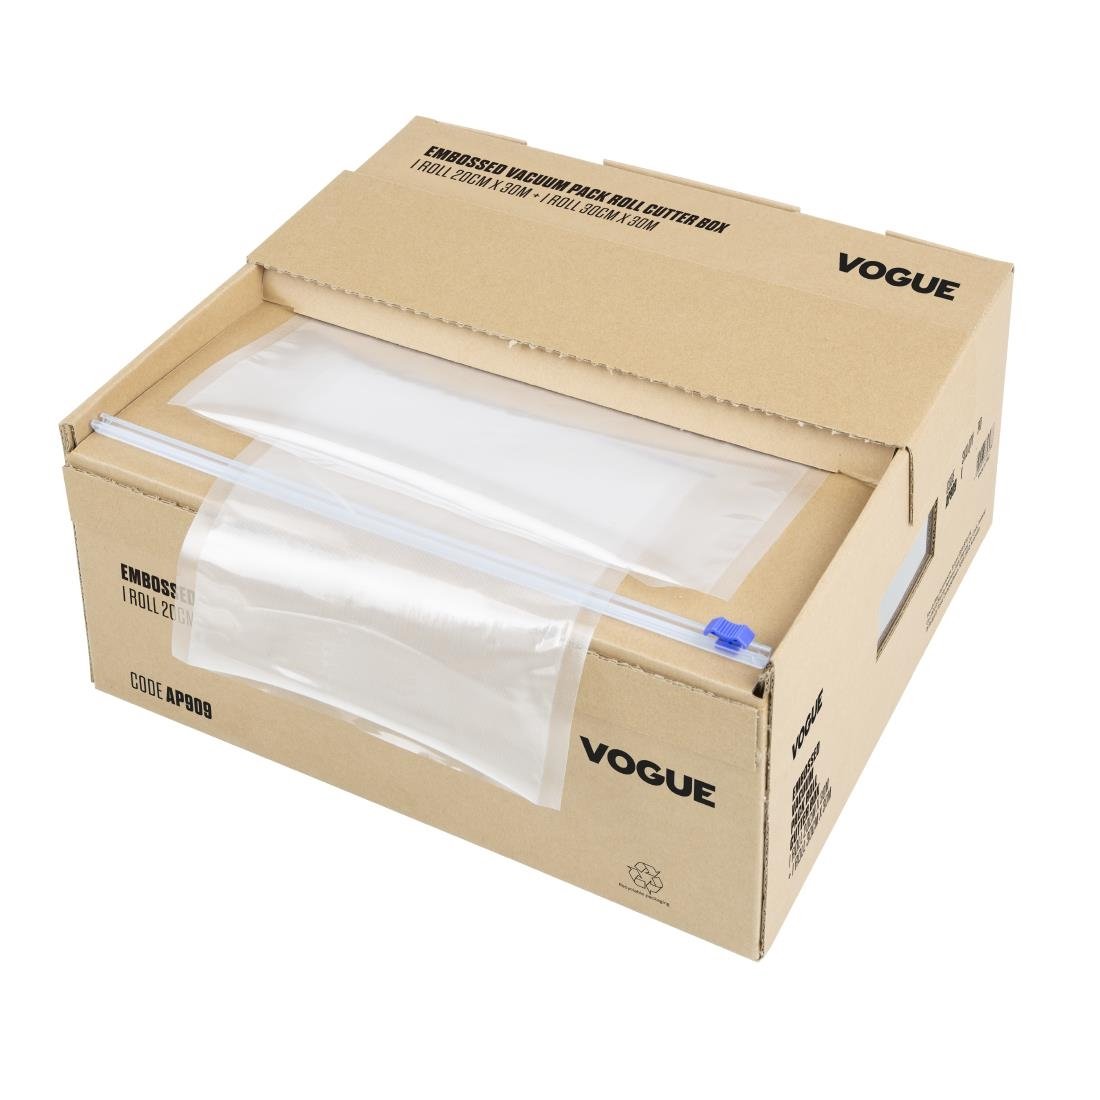 Rouleau d'emballage sous vide Vogue avec boîte de découpe (gaufré) 200 mm et 300 mm, lot de 2